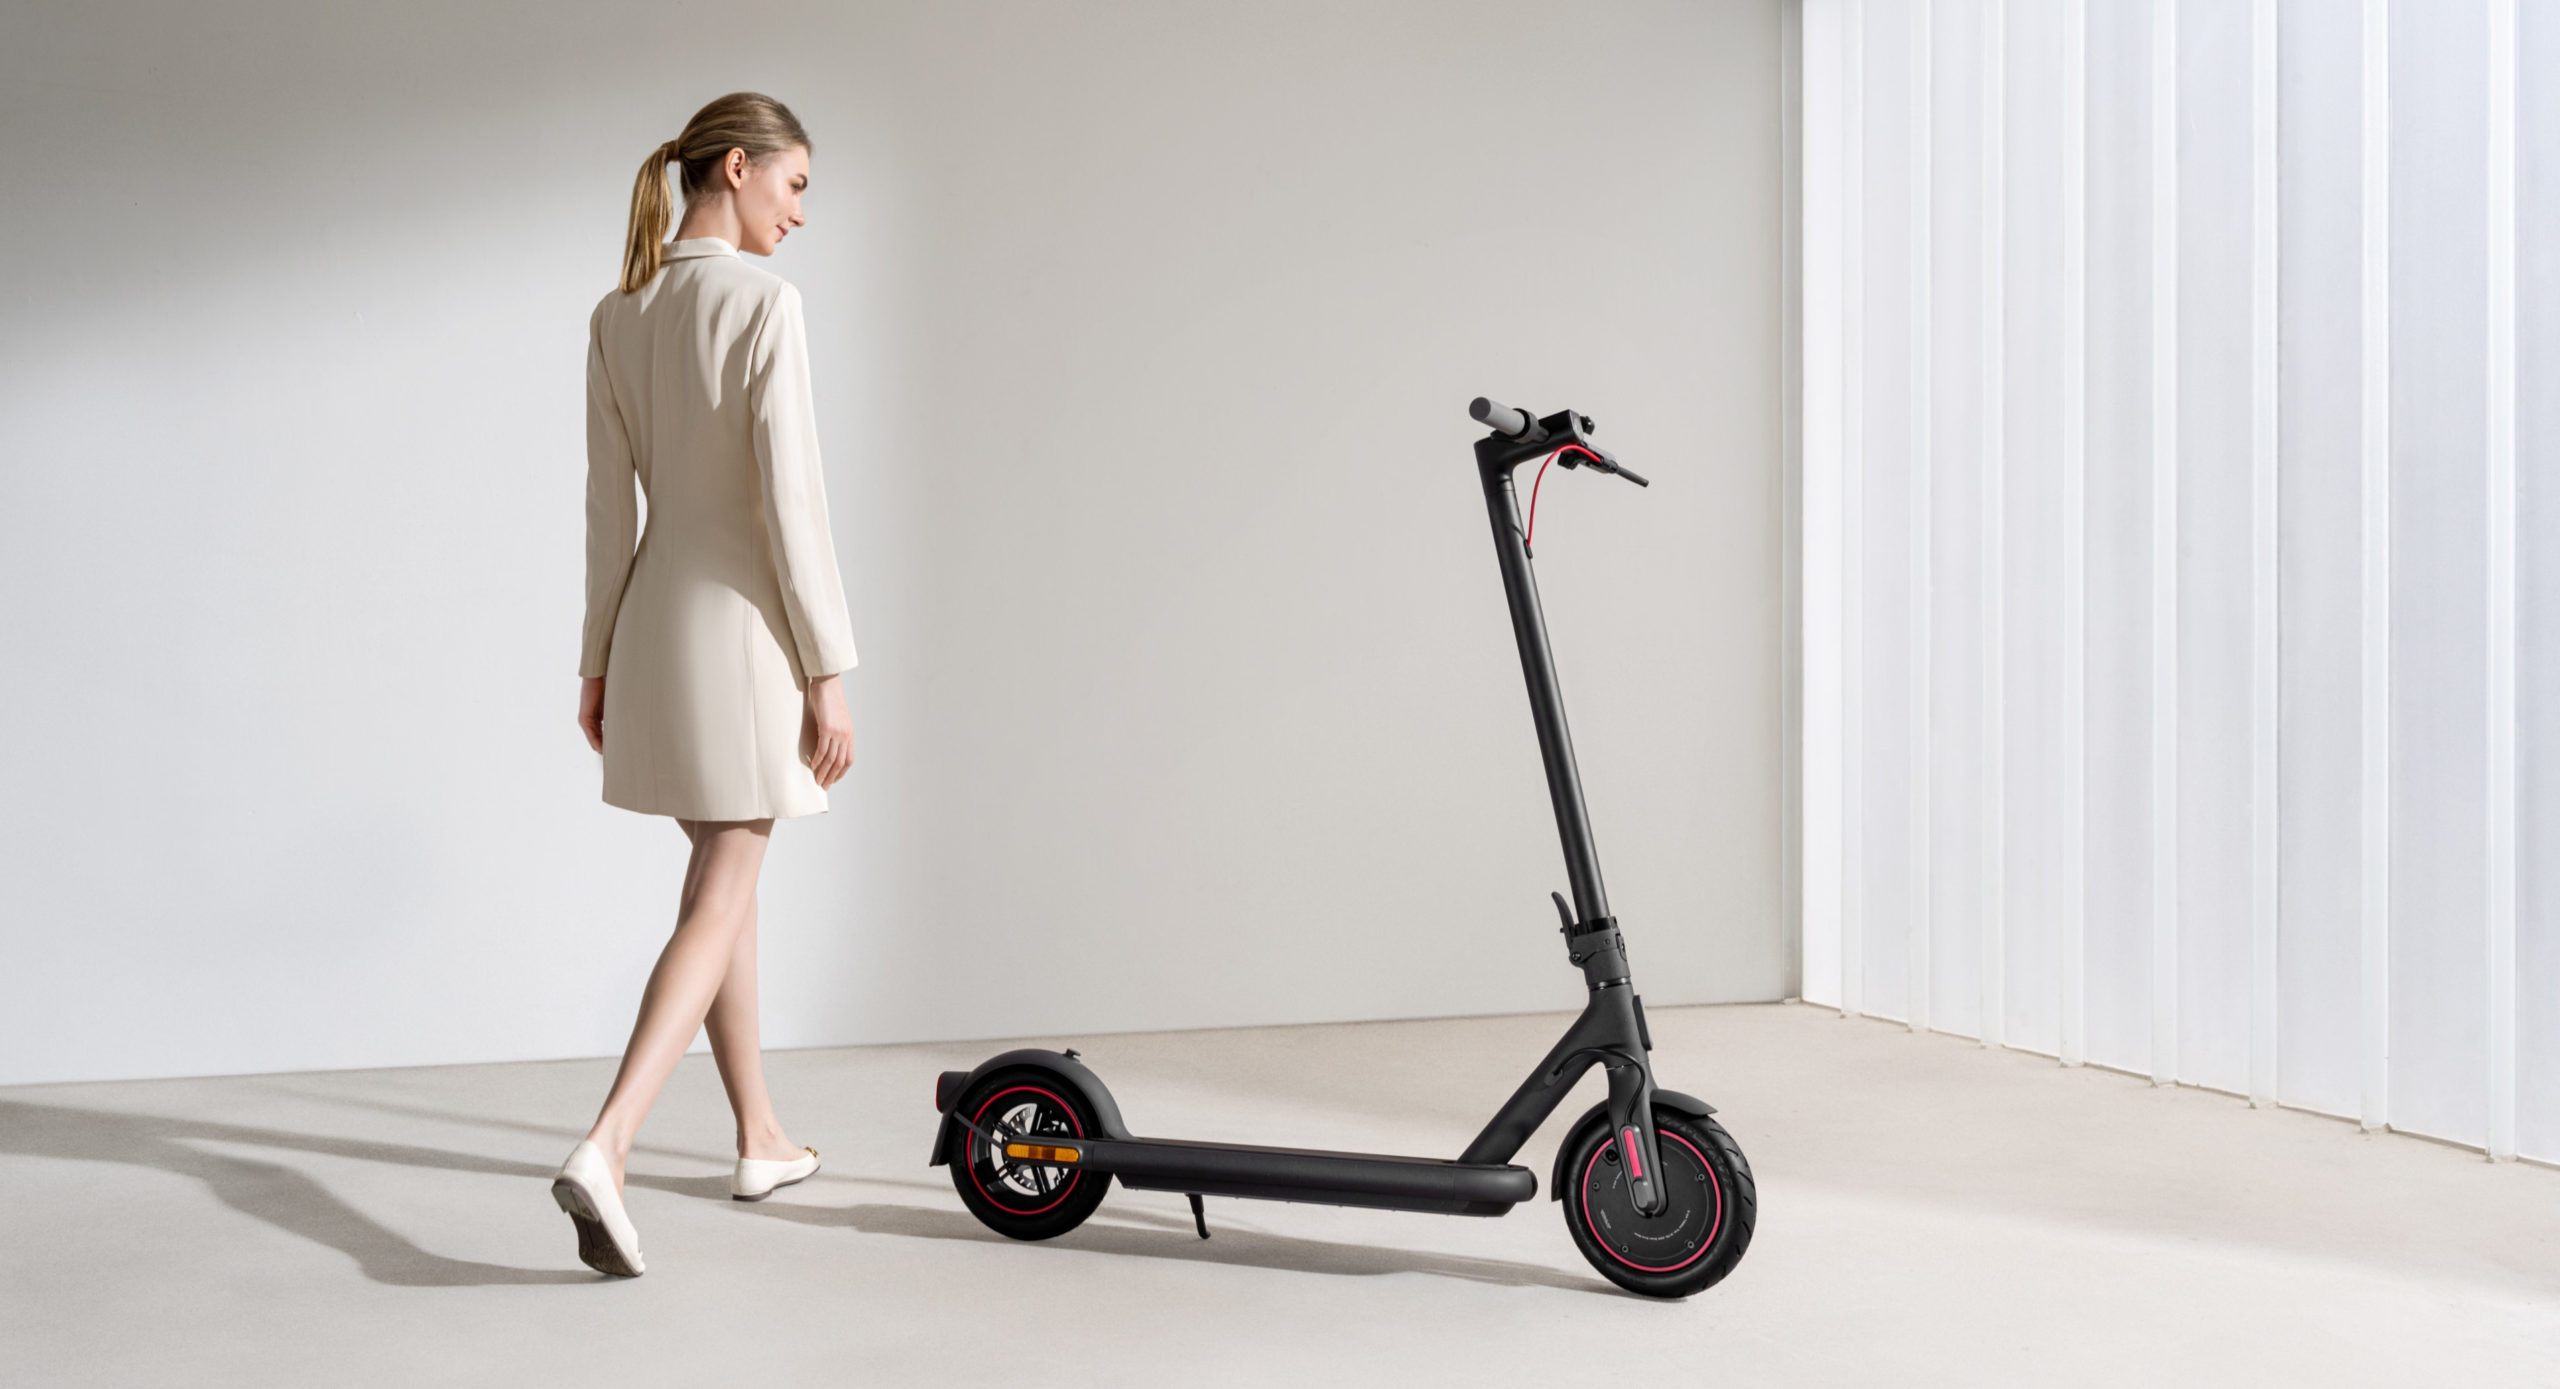 xiaomi-electric-scooter-4-pro-vorgestellt-header-scaled.jpg